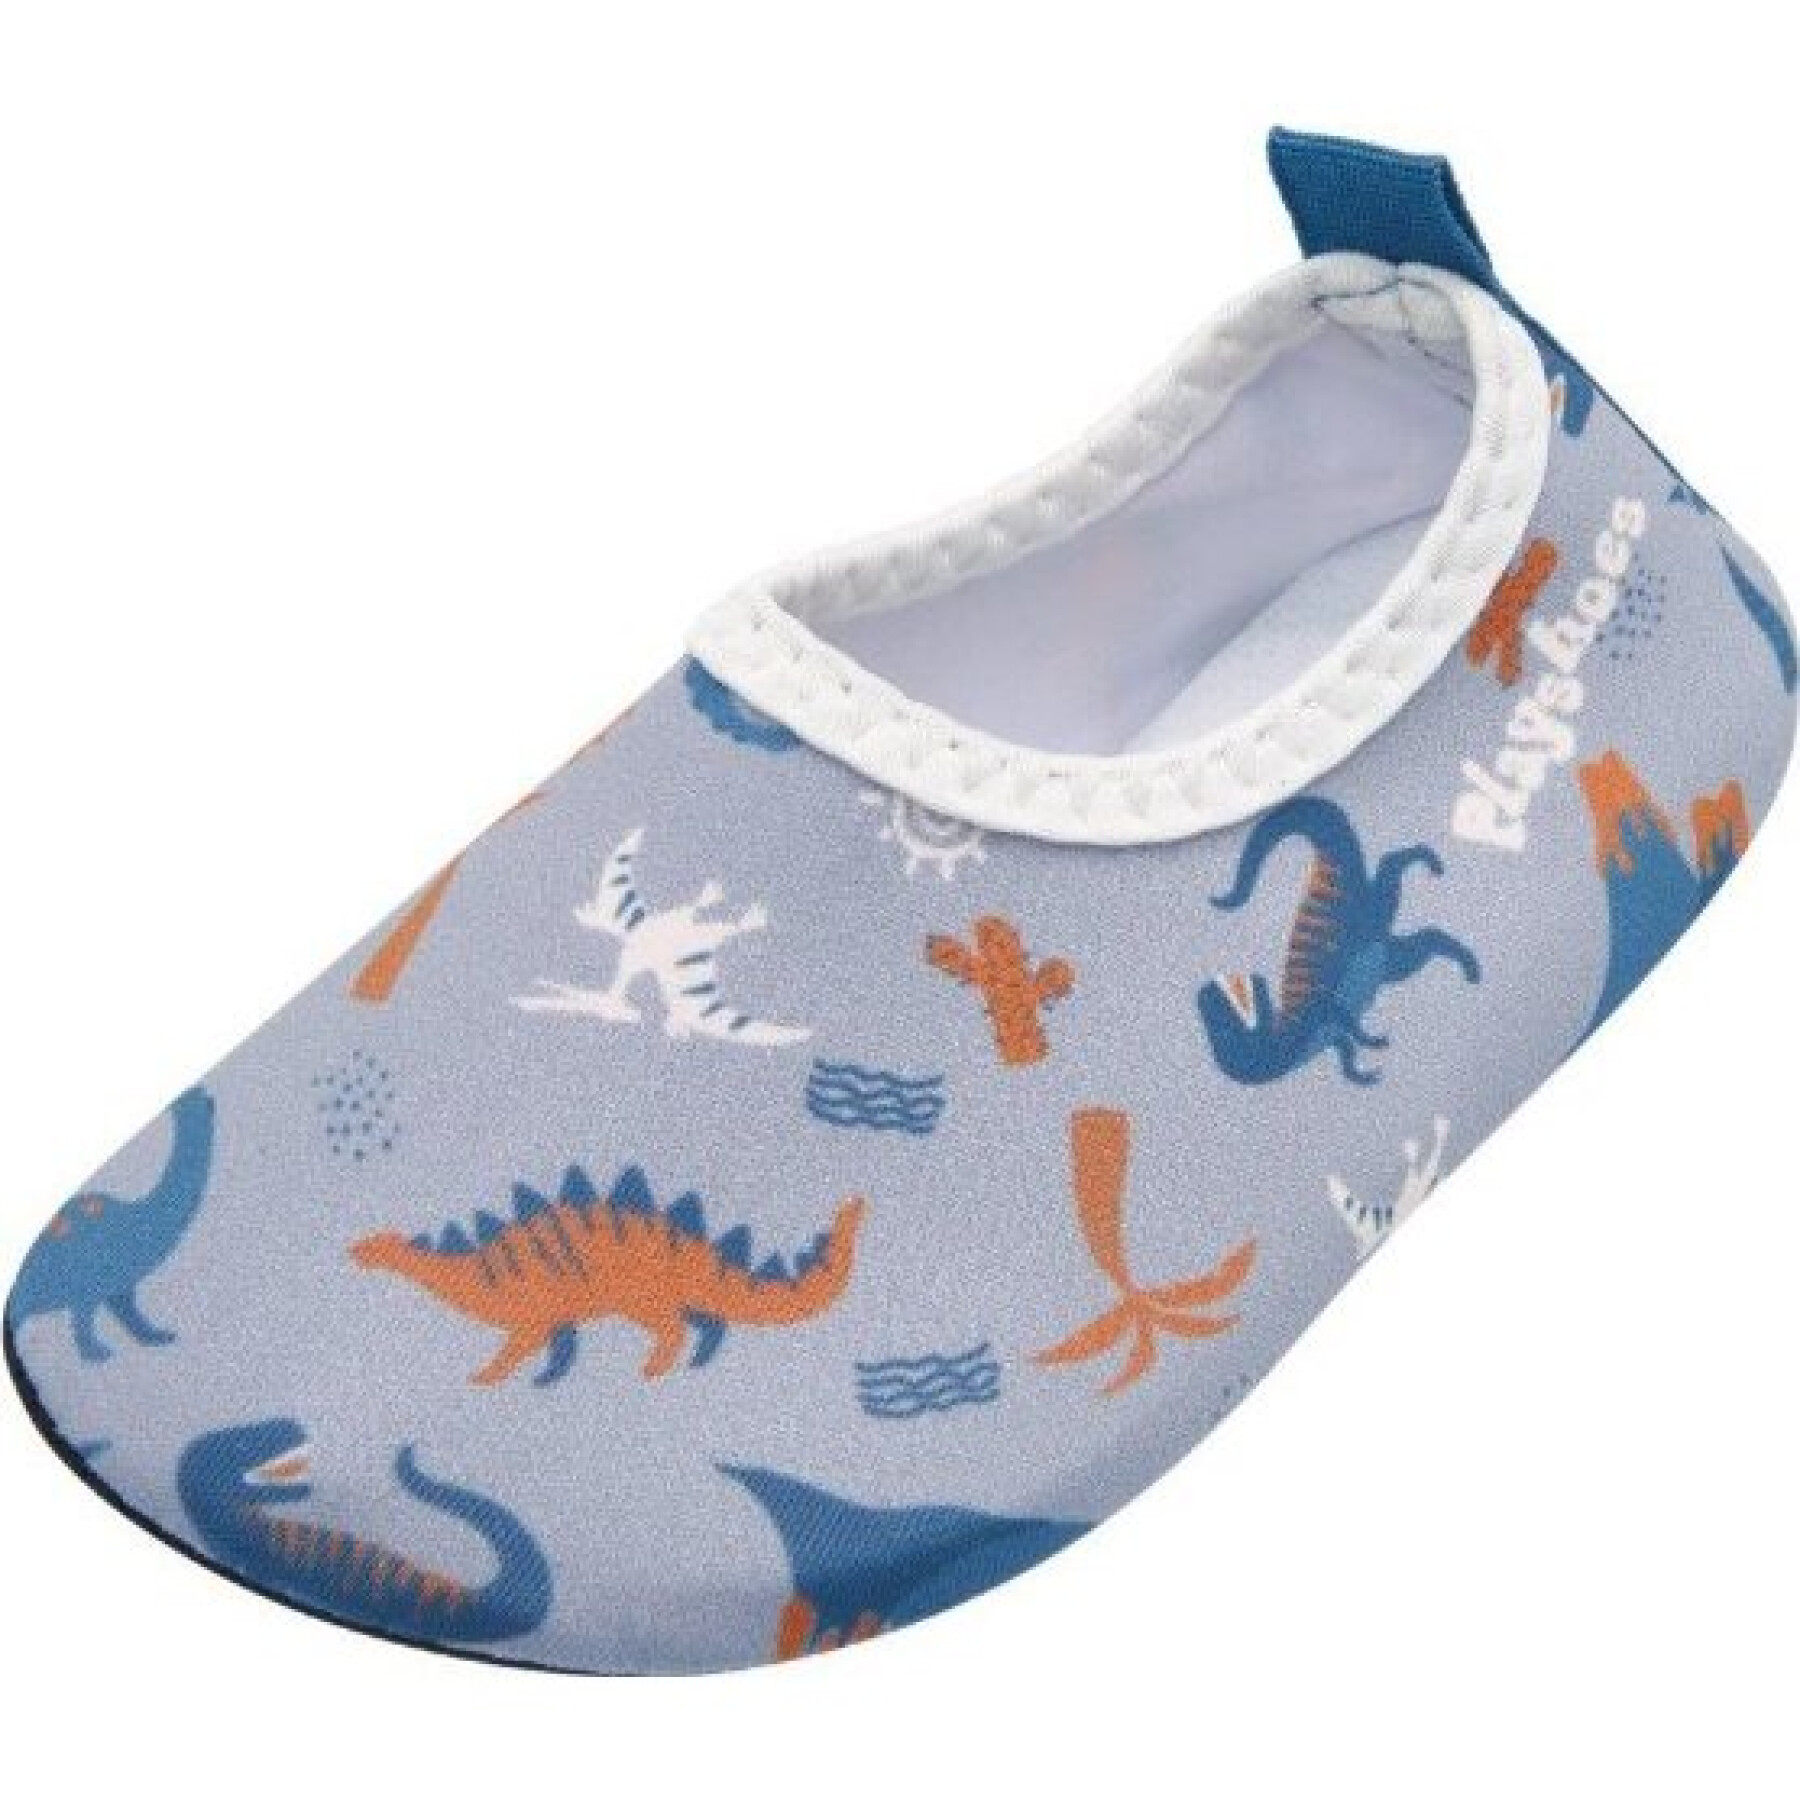 Zapatos de agua para bebés Playshoes Dino Allover